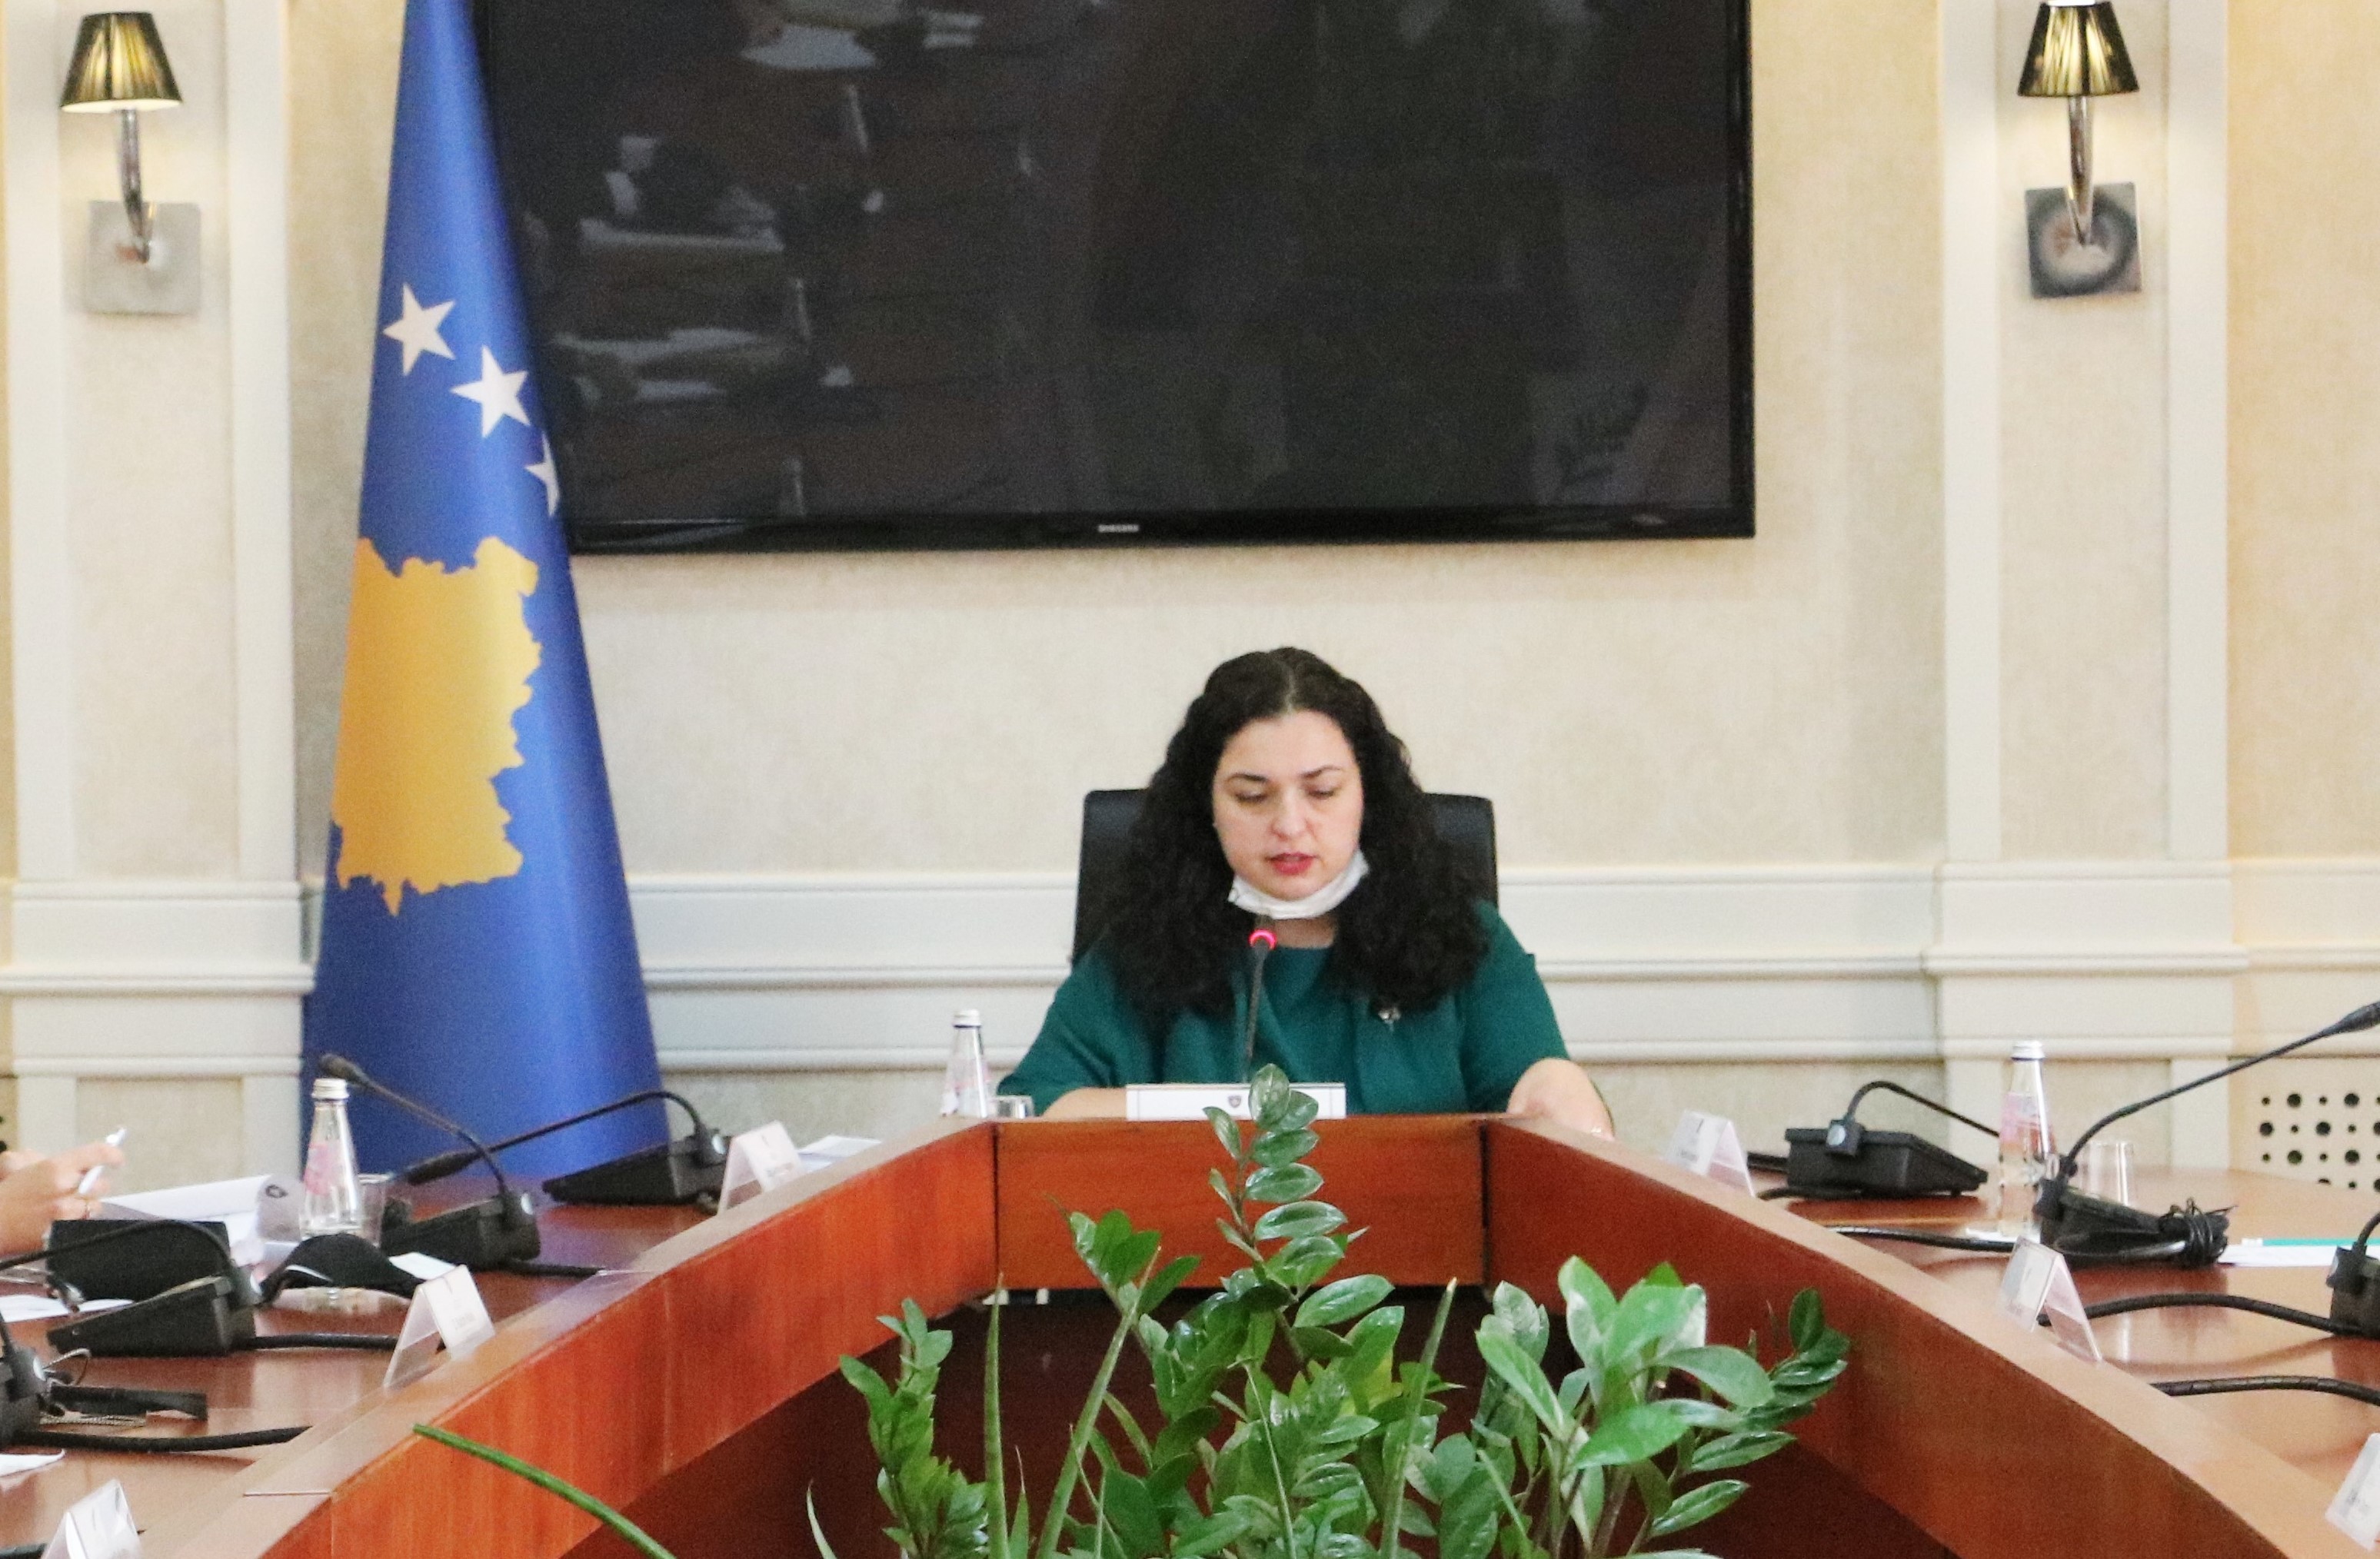 Seanca e radhës e Kuvendit të Kosovës të mbahet më 4 qershor